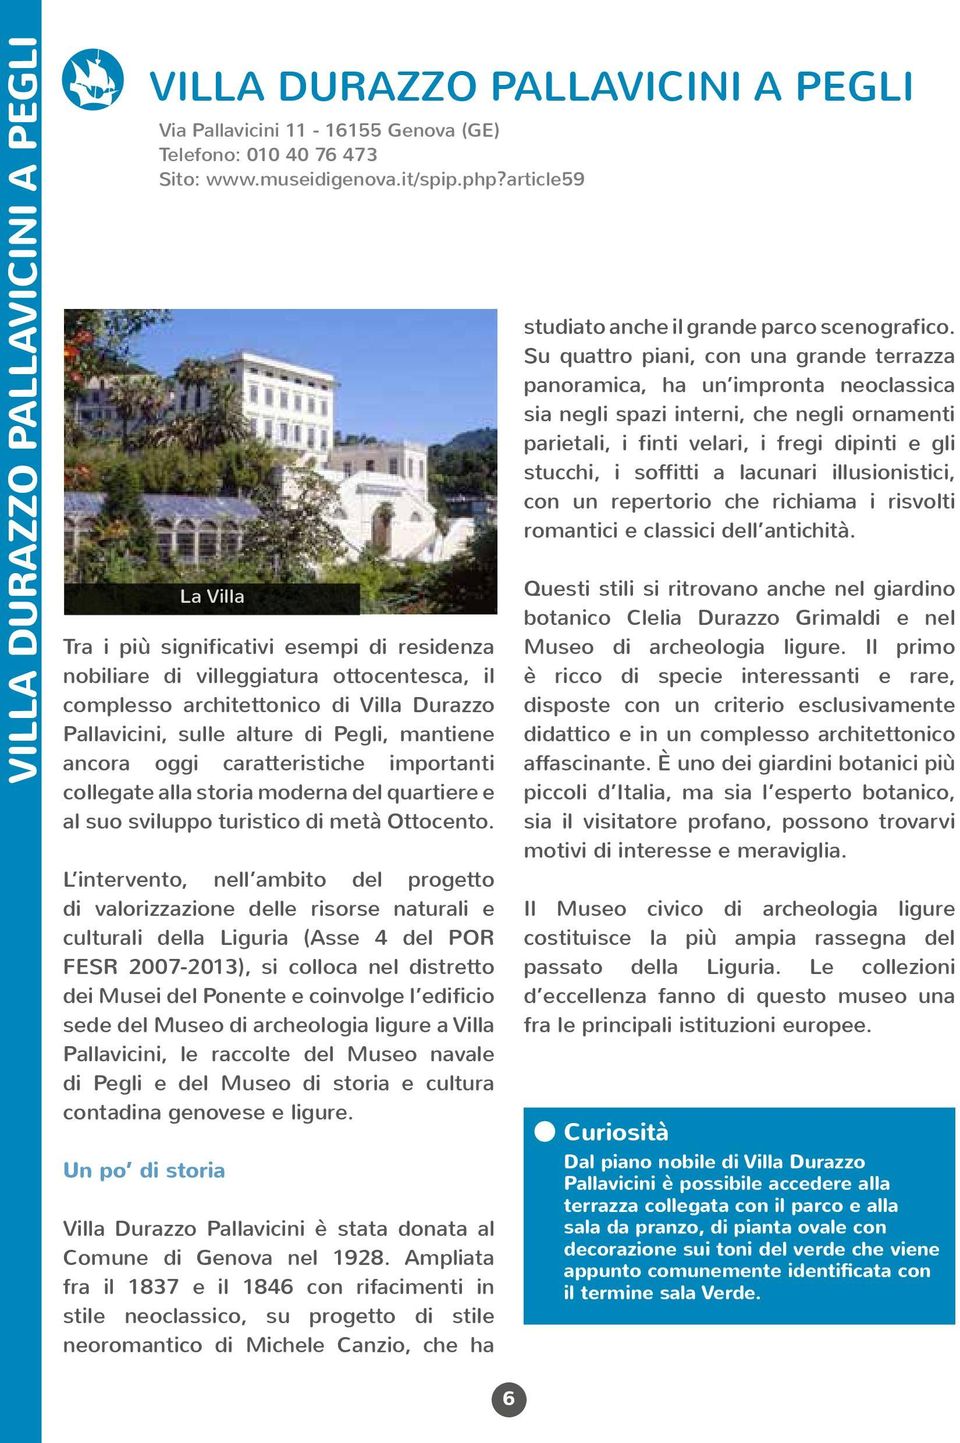 L intervento, nell ambito del progetto di valorizzazione delle risorse naturali e culturali della Liguria (Asse 4 del POR FESR 2007-2013), si colloca nel distretto dei Musei del Ponente e coinvolge l